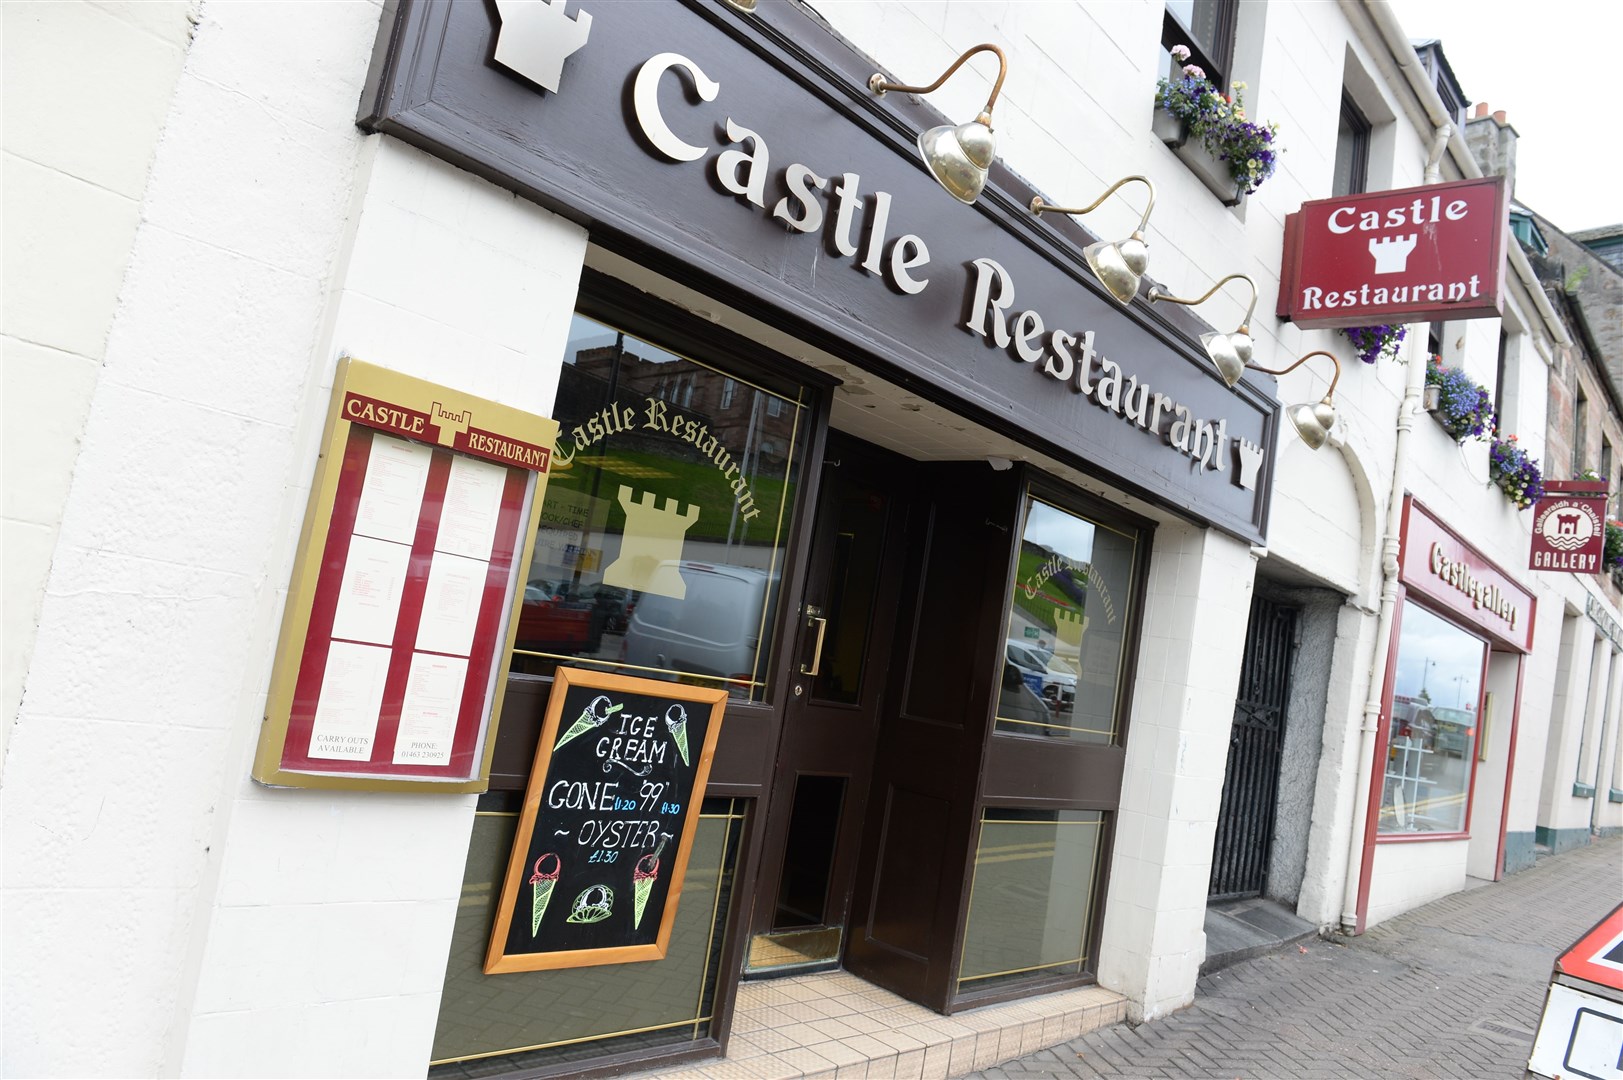 Castle Restaurant Picture: Alison White. Image No.